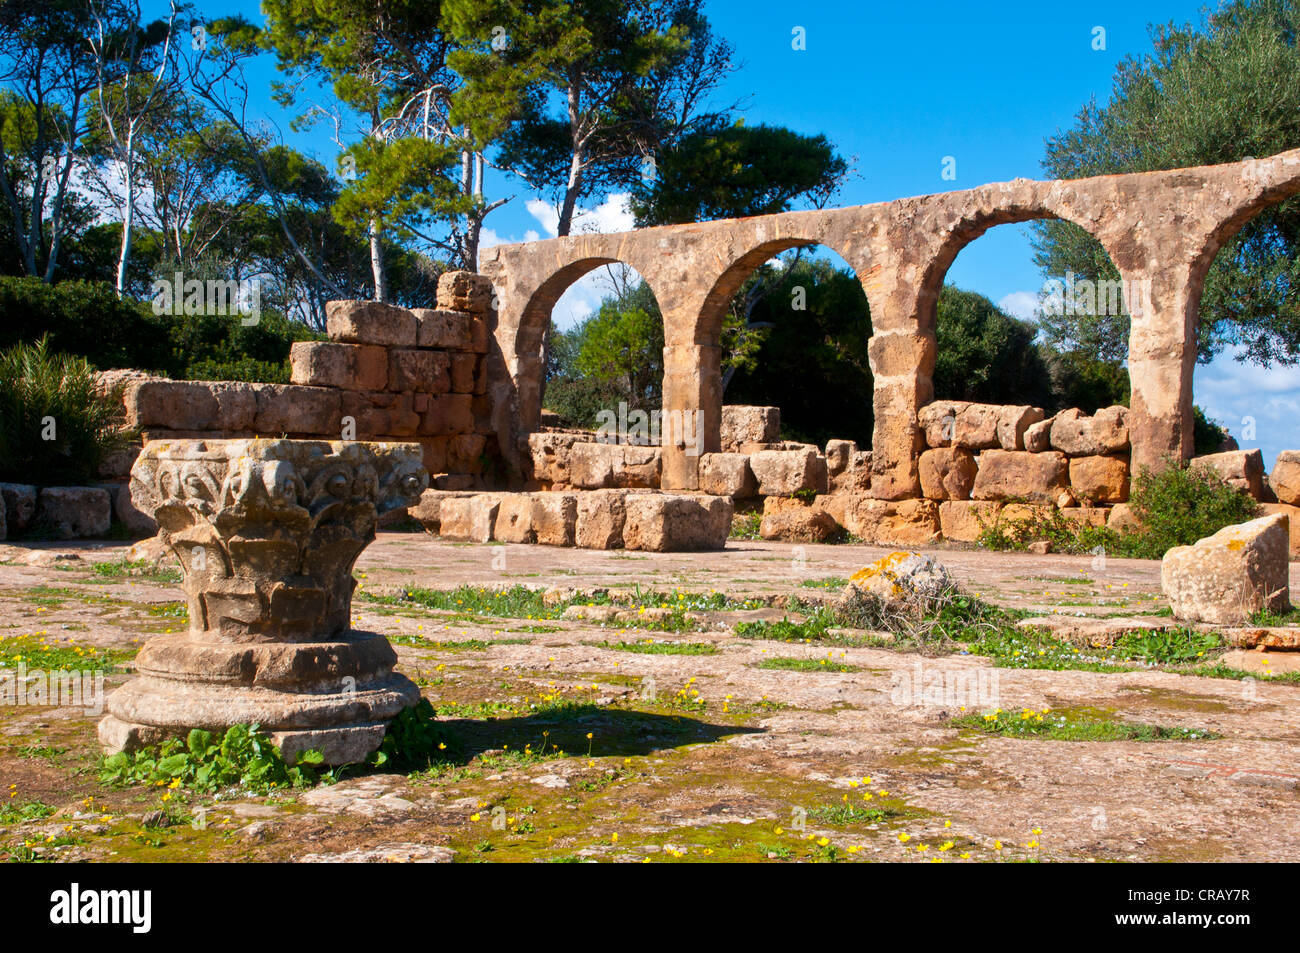 Les ruines romaines de Tipasa, Site du patrimoine mondial de l'UNESCO, l'Algérie, l'Afrique Banque D'Images